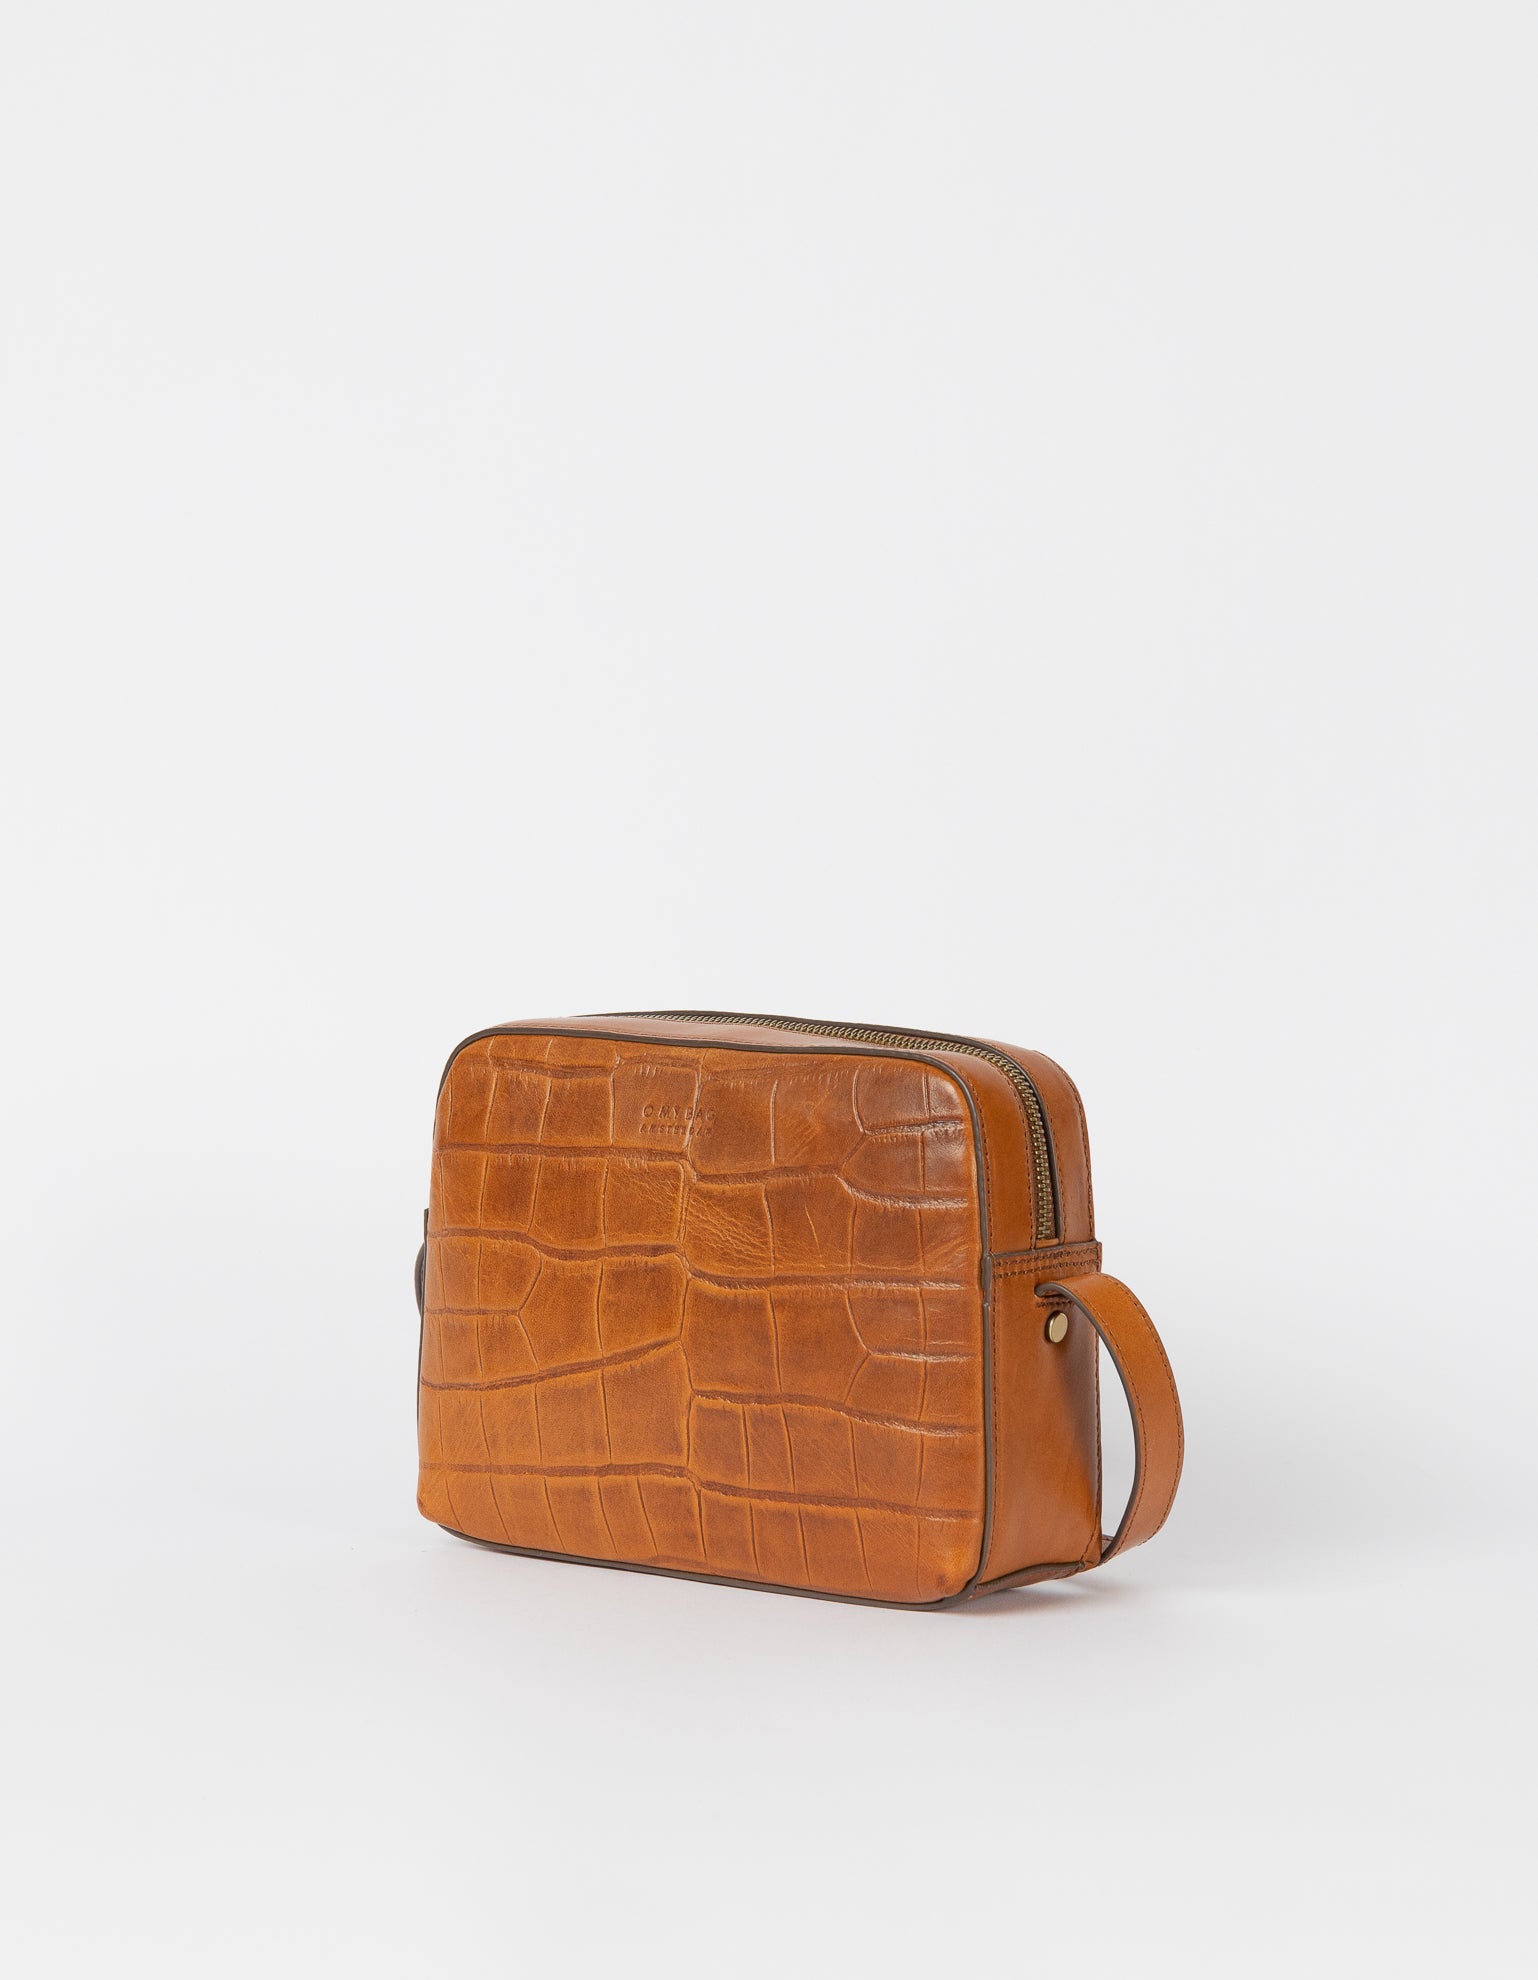 Sue Cognac Classic Croco Leather Handbag side.